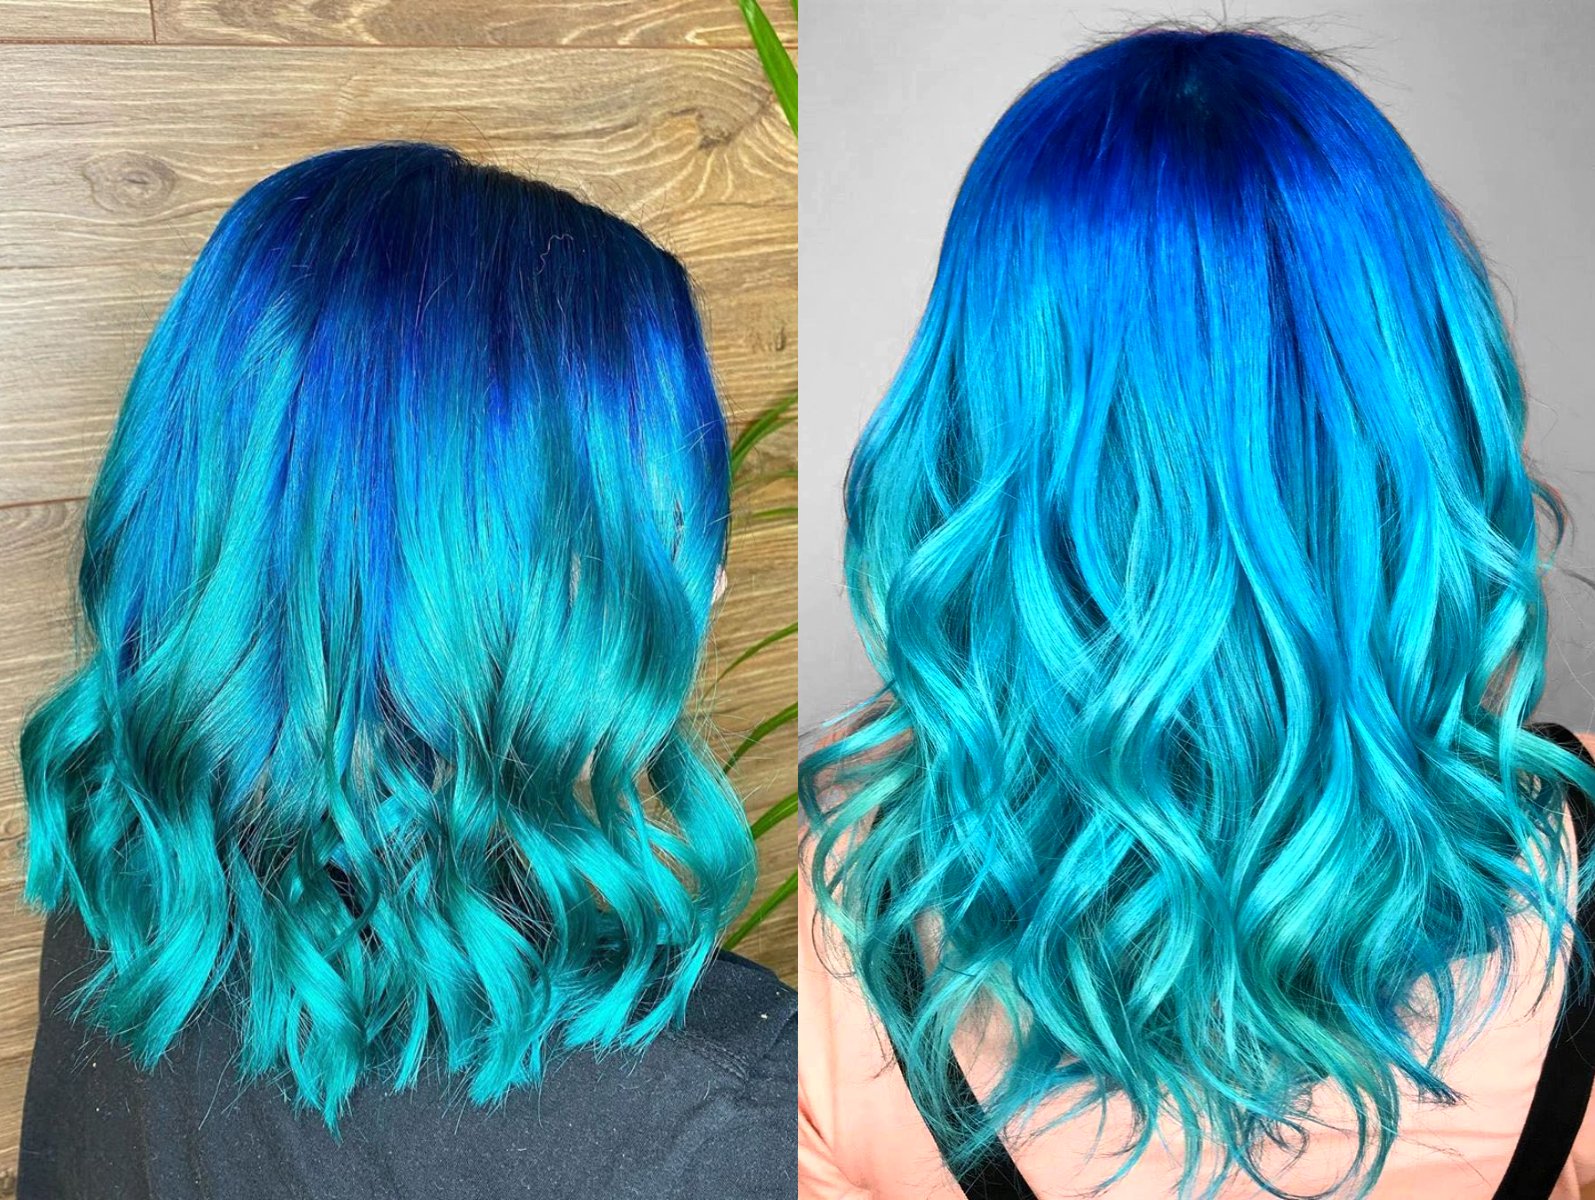 Afectar Ashley Furman colgante Blue balayage', el tinte de cabello azul que parece el mar